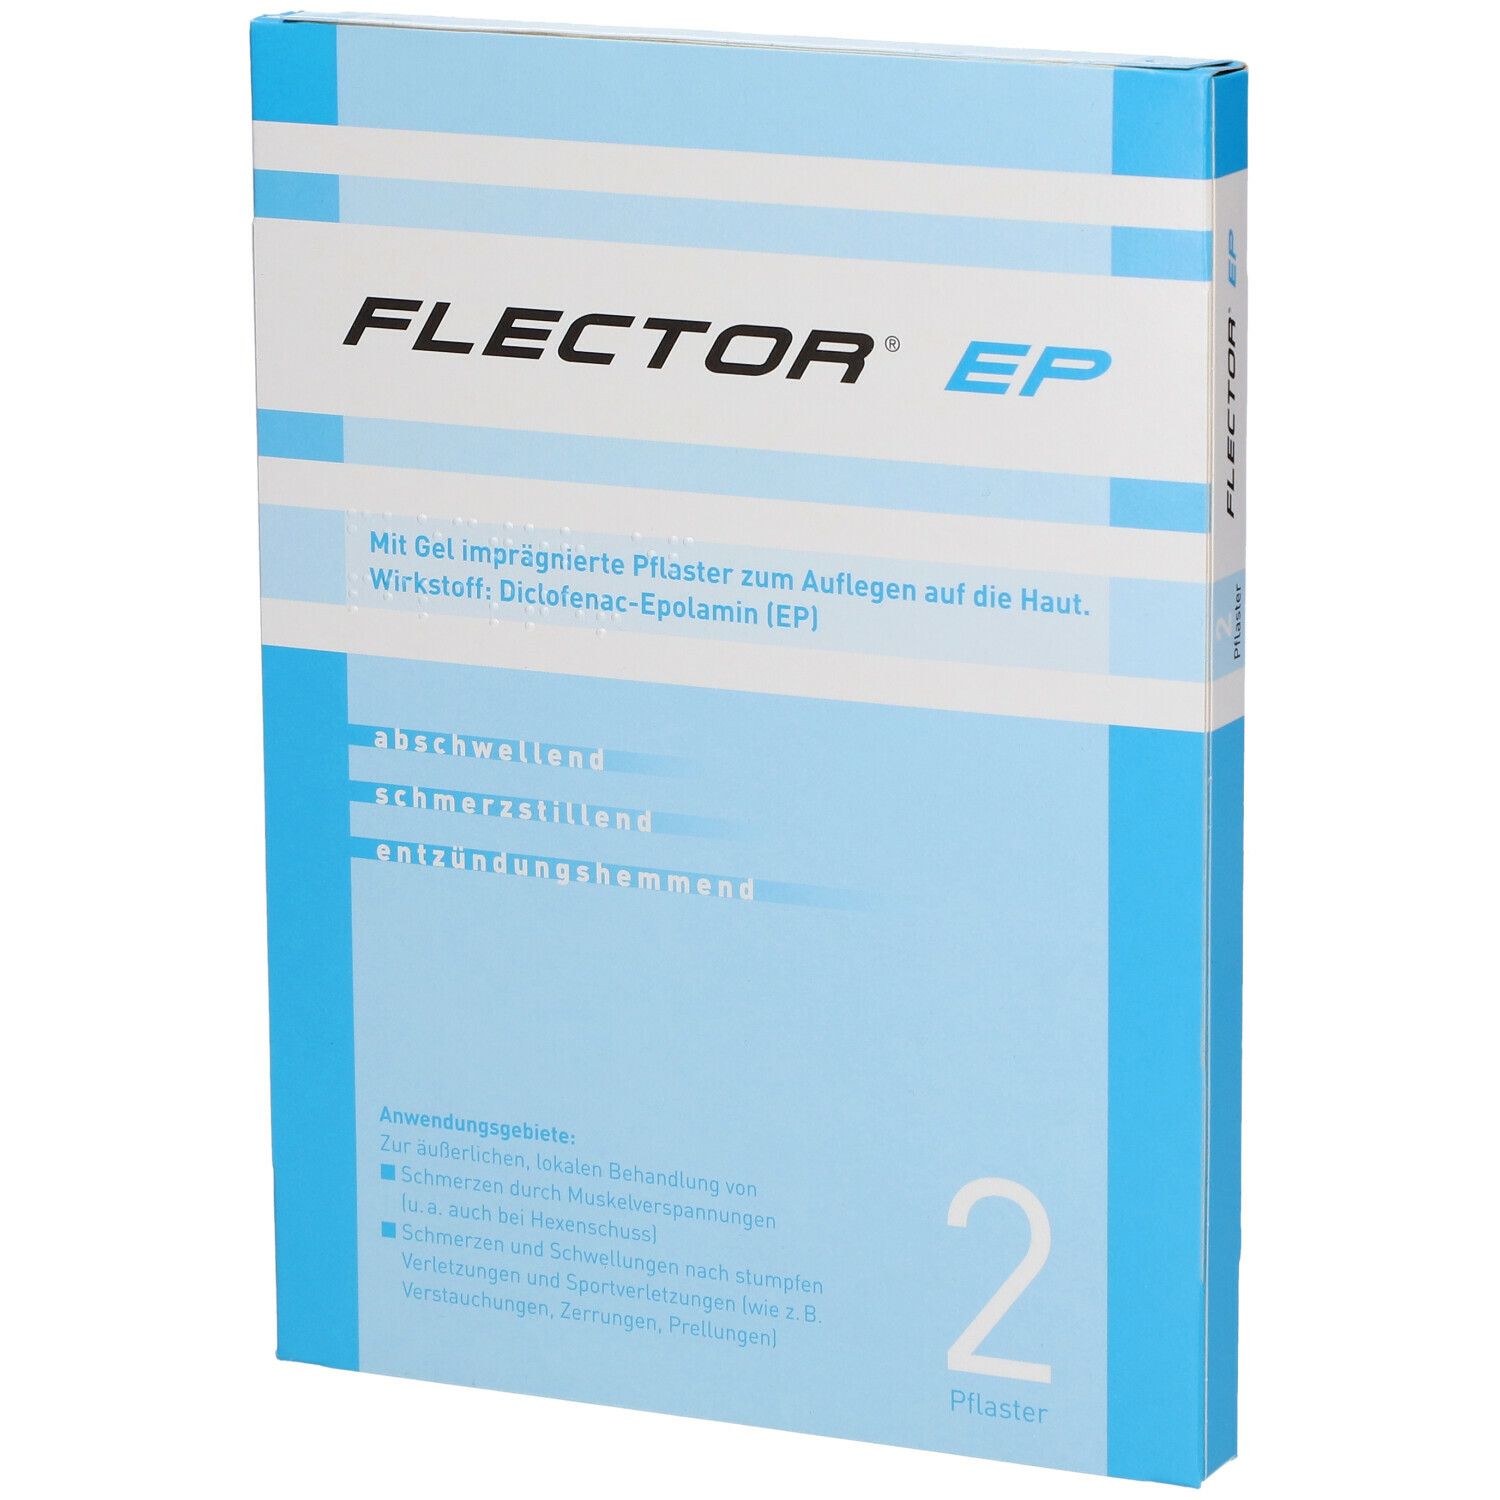 FLECTOR® EP Pflaster